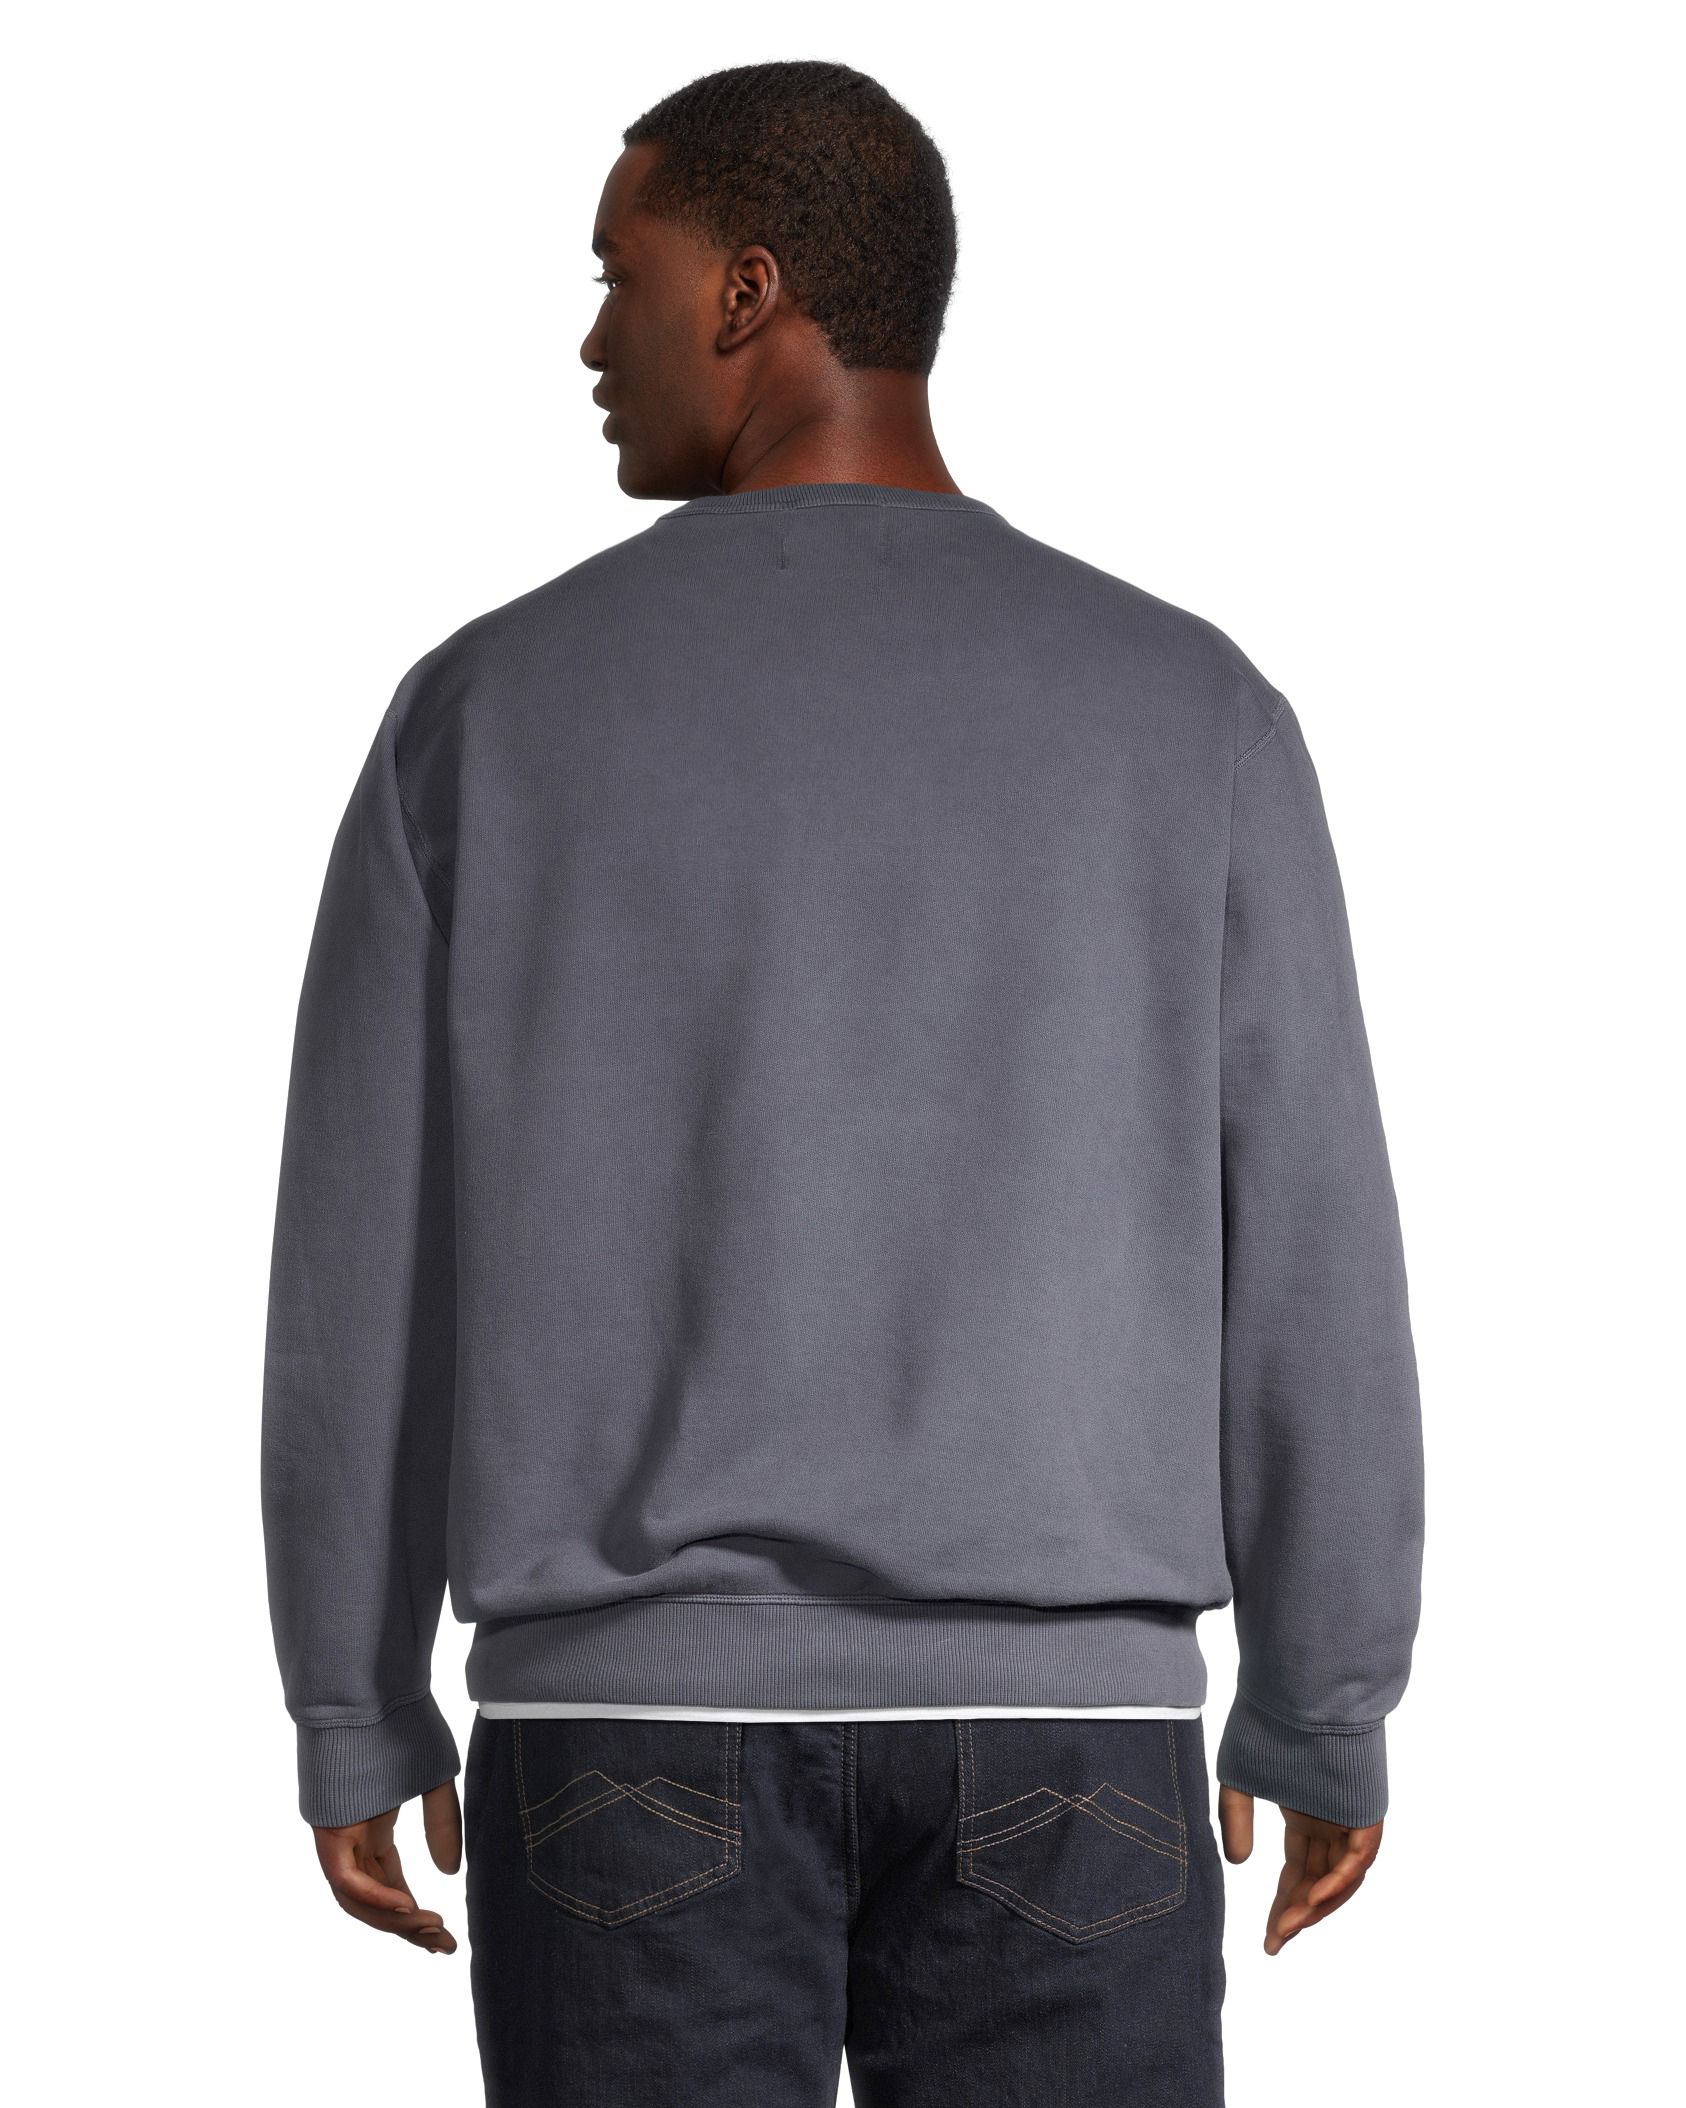 WindRiver Men's Original Fleece Cotton Crewneck Sweatshirt